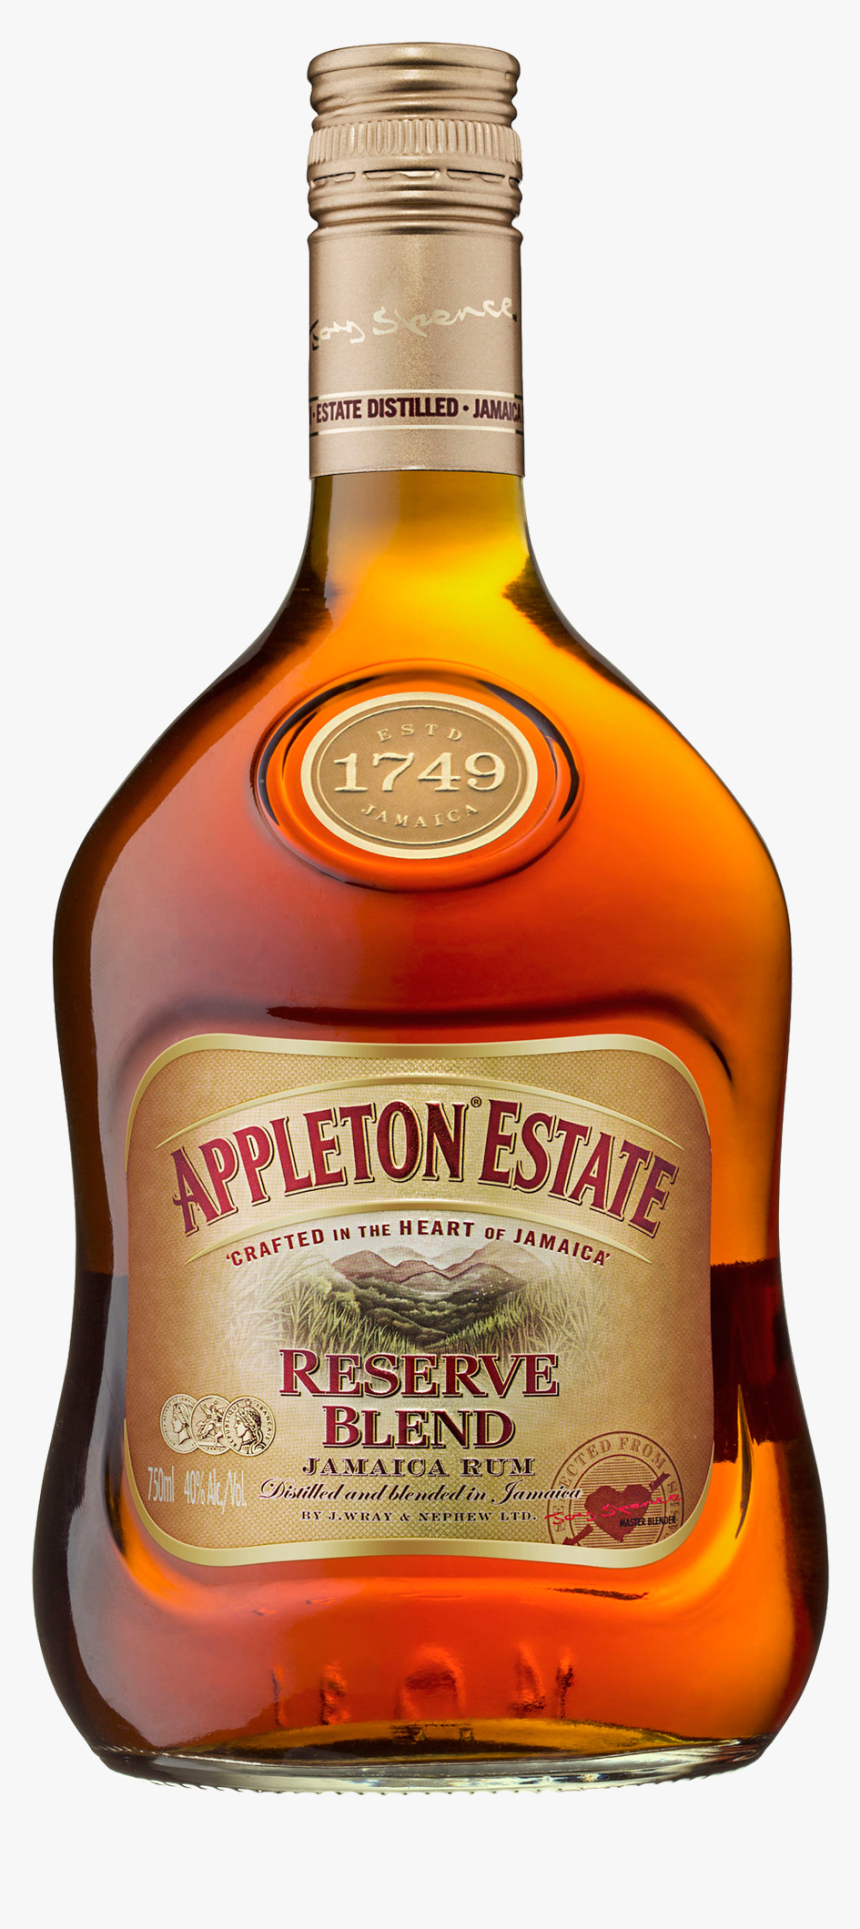 Appleton Estate Reserve Blend Dark Rum, Transparent - Blended Whiskey, HD Png Download, Free Download